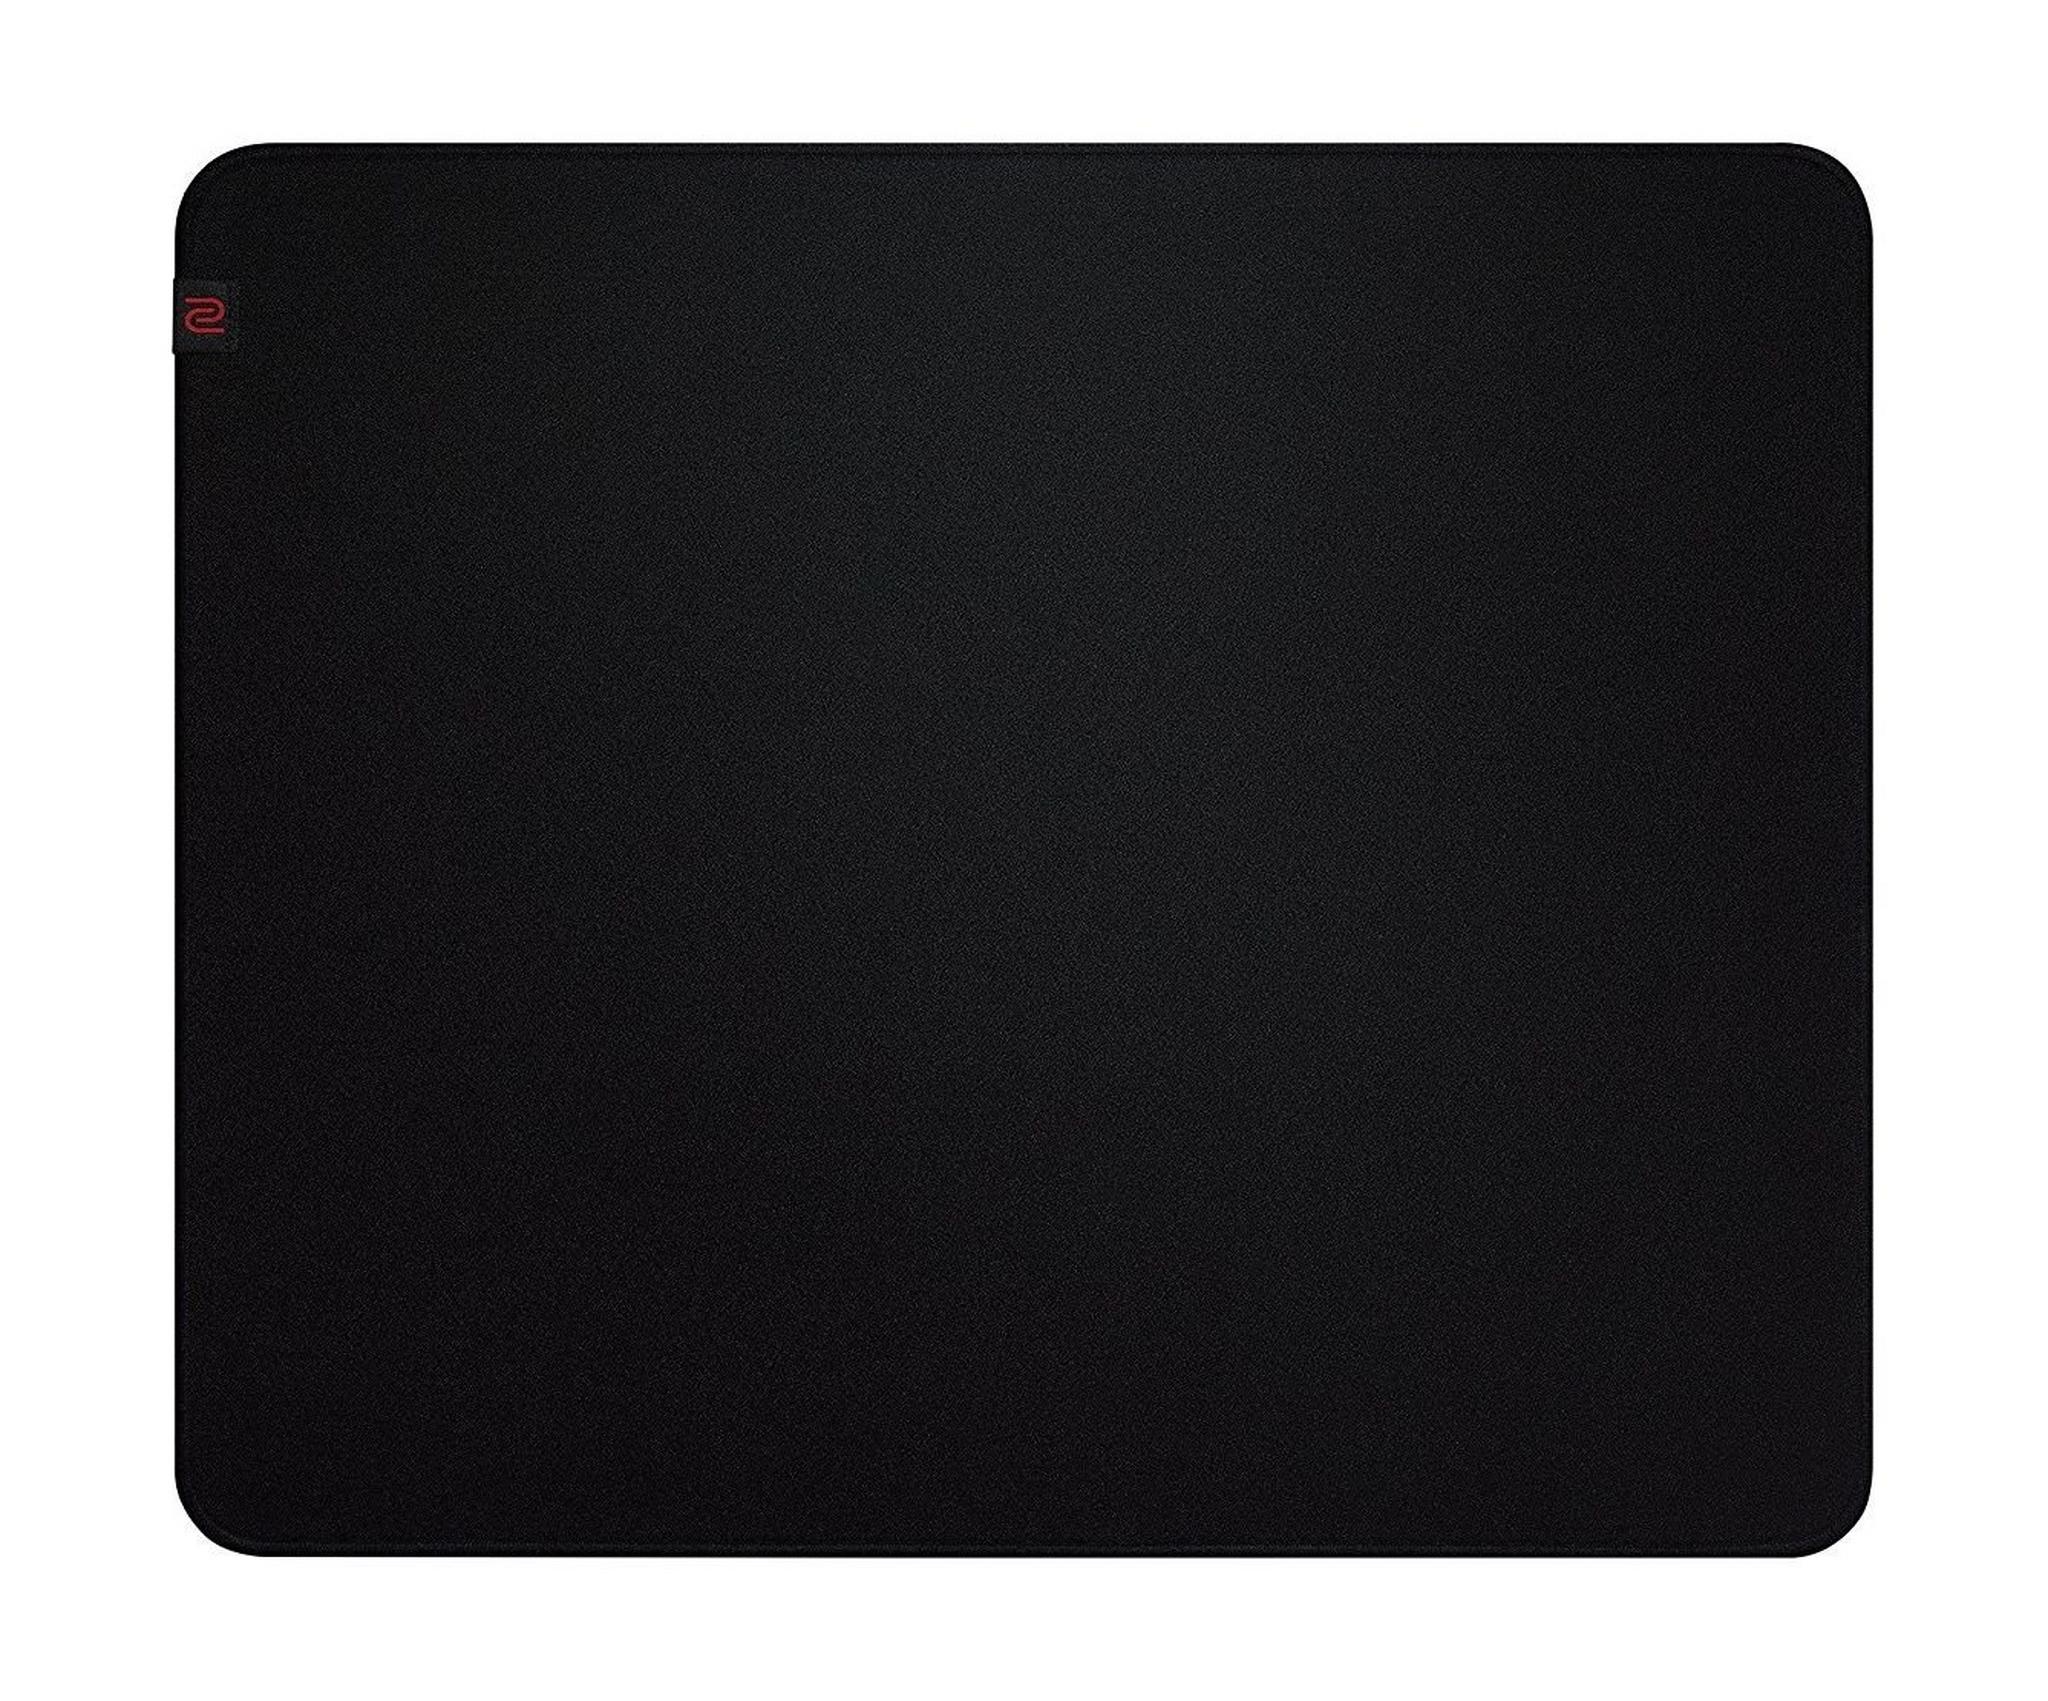 BenQ G TF-X Mouse Pad Large - Black